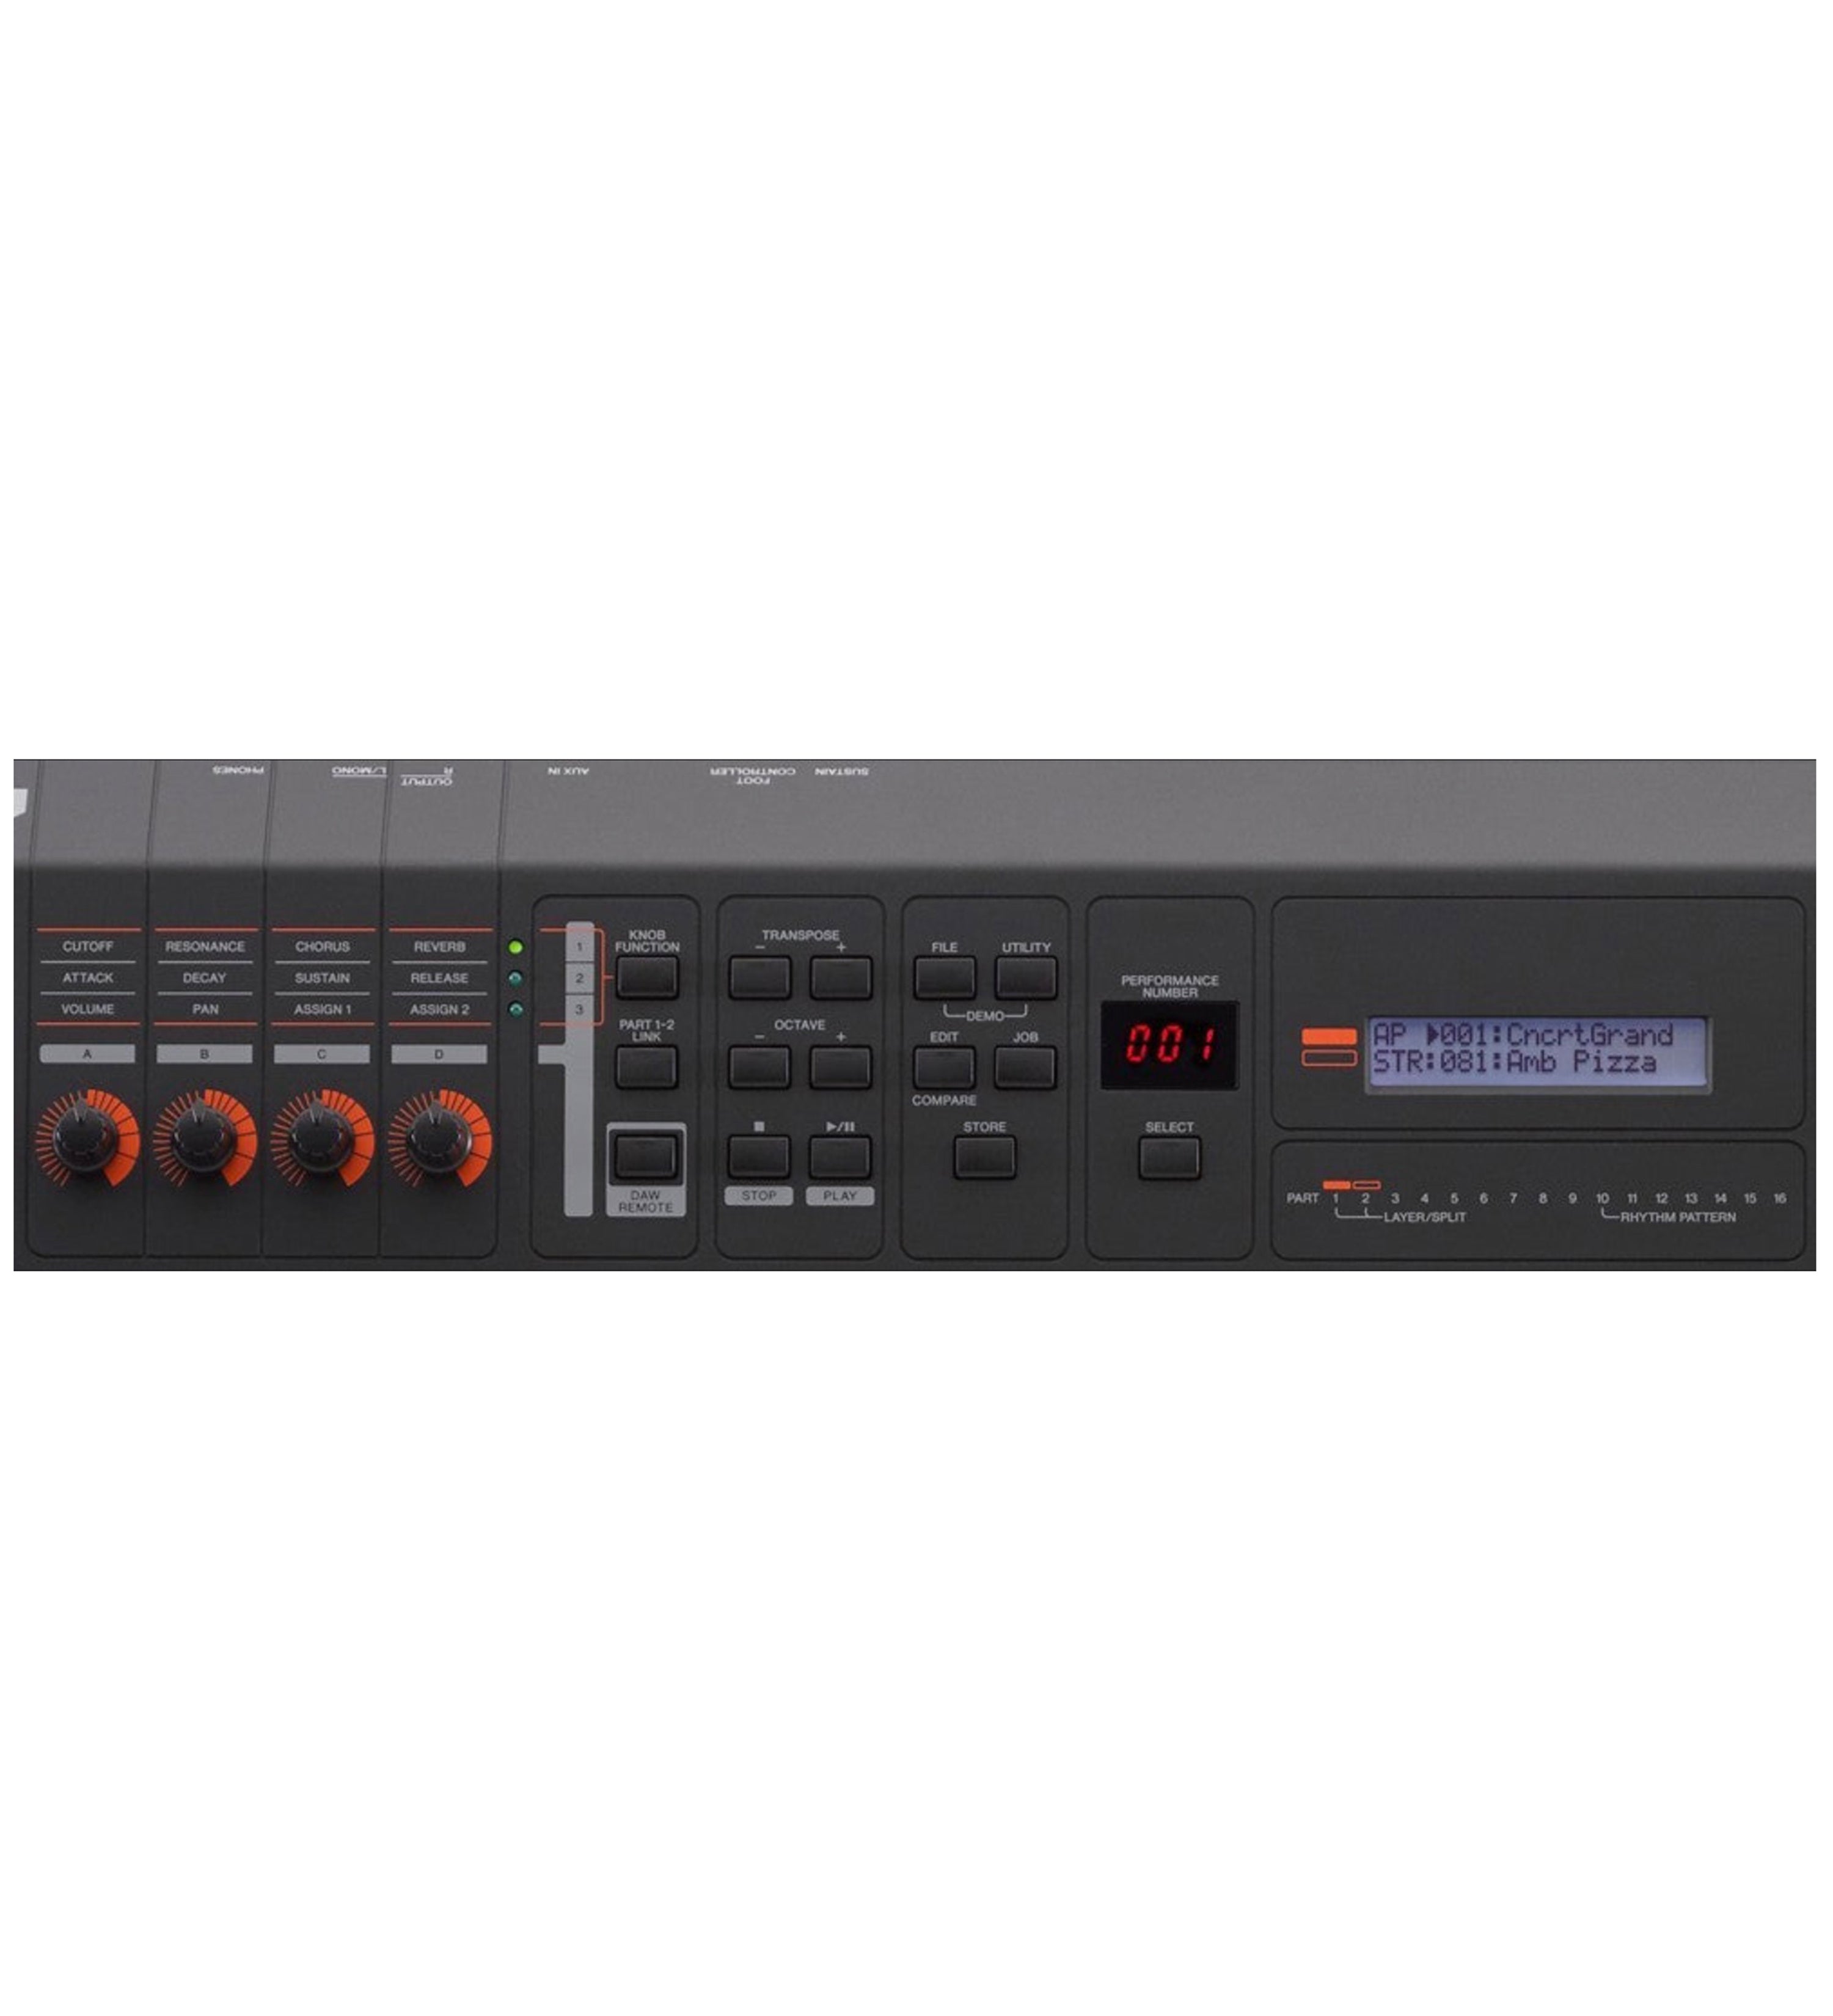 Yamaha MX49 Music Synthesizer - control panel 1